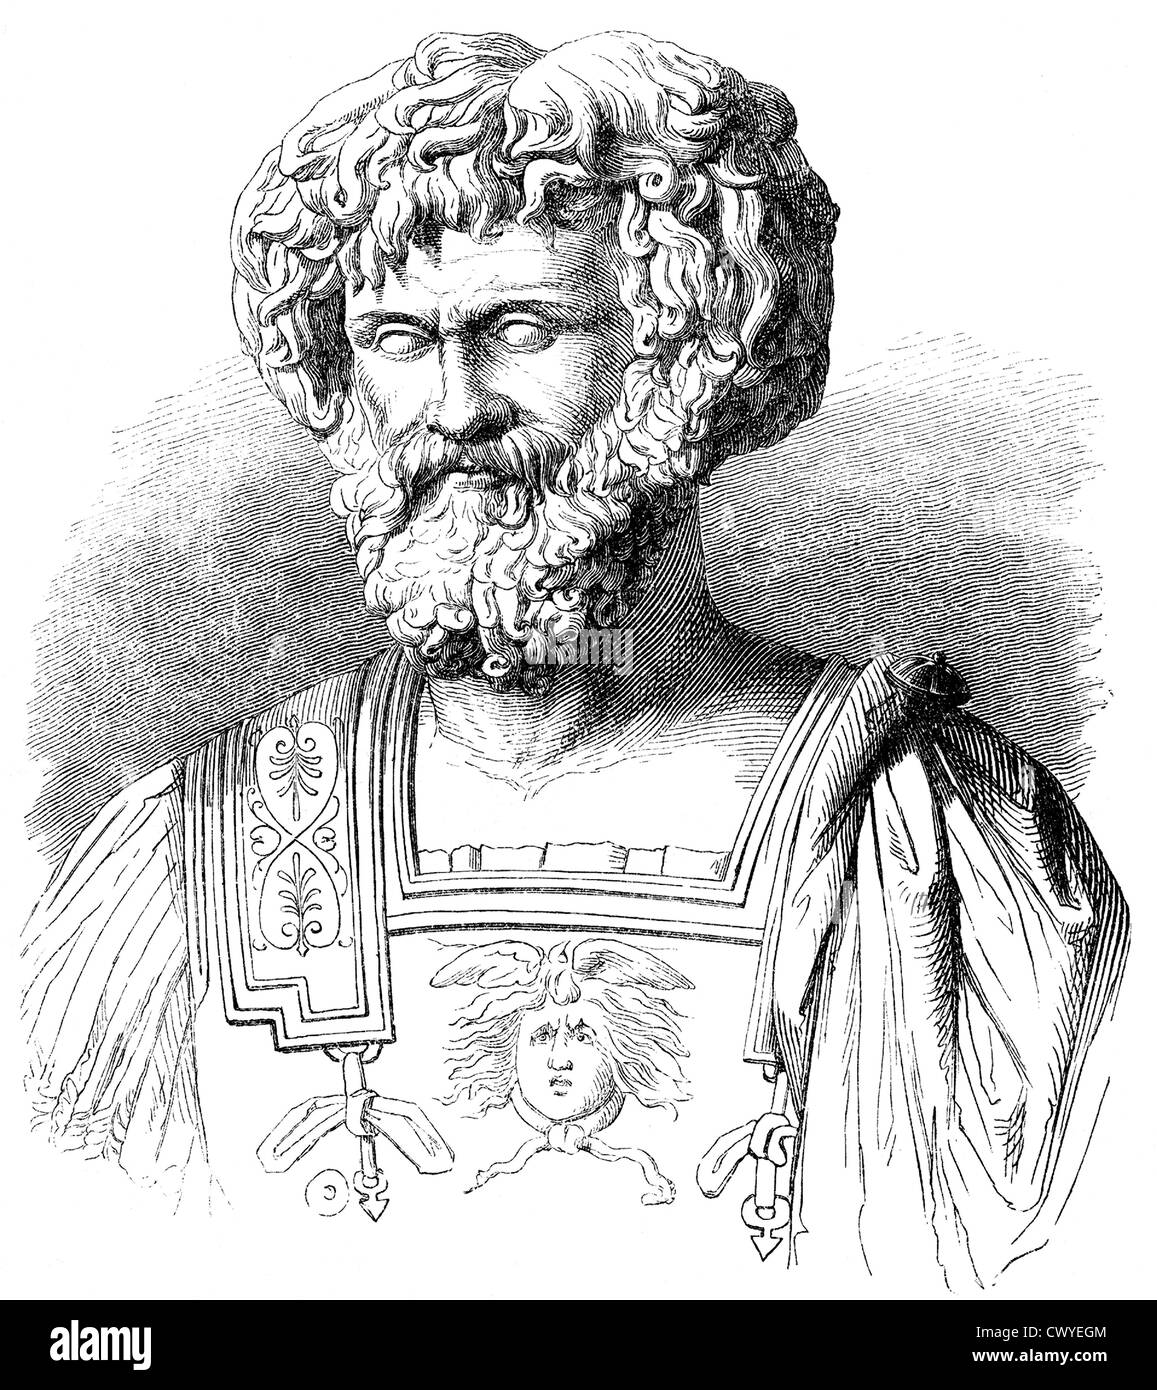 Hannibal oder Hannibal Barkas, ca. 246-183 v. Chr., großer militärischer Befehlshaber der Antike, im zweiten Punischen Krieg gegen die Römer Stockfoto